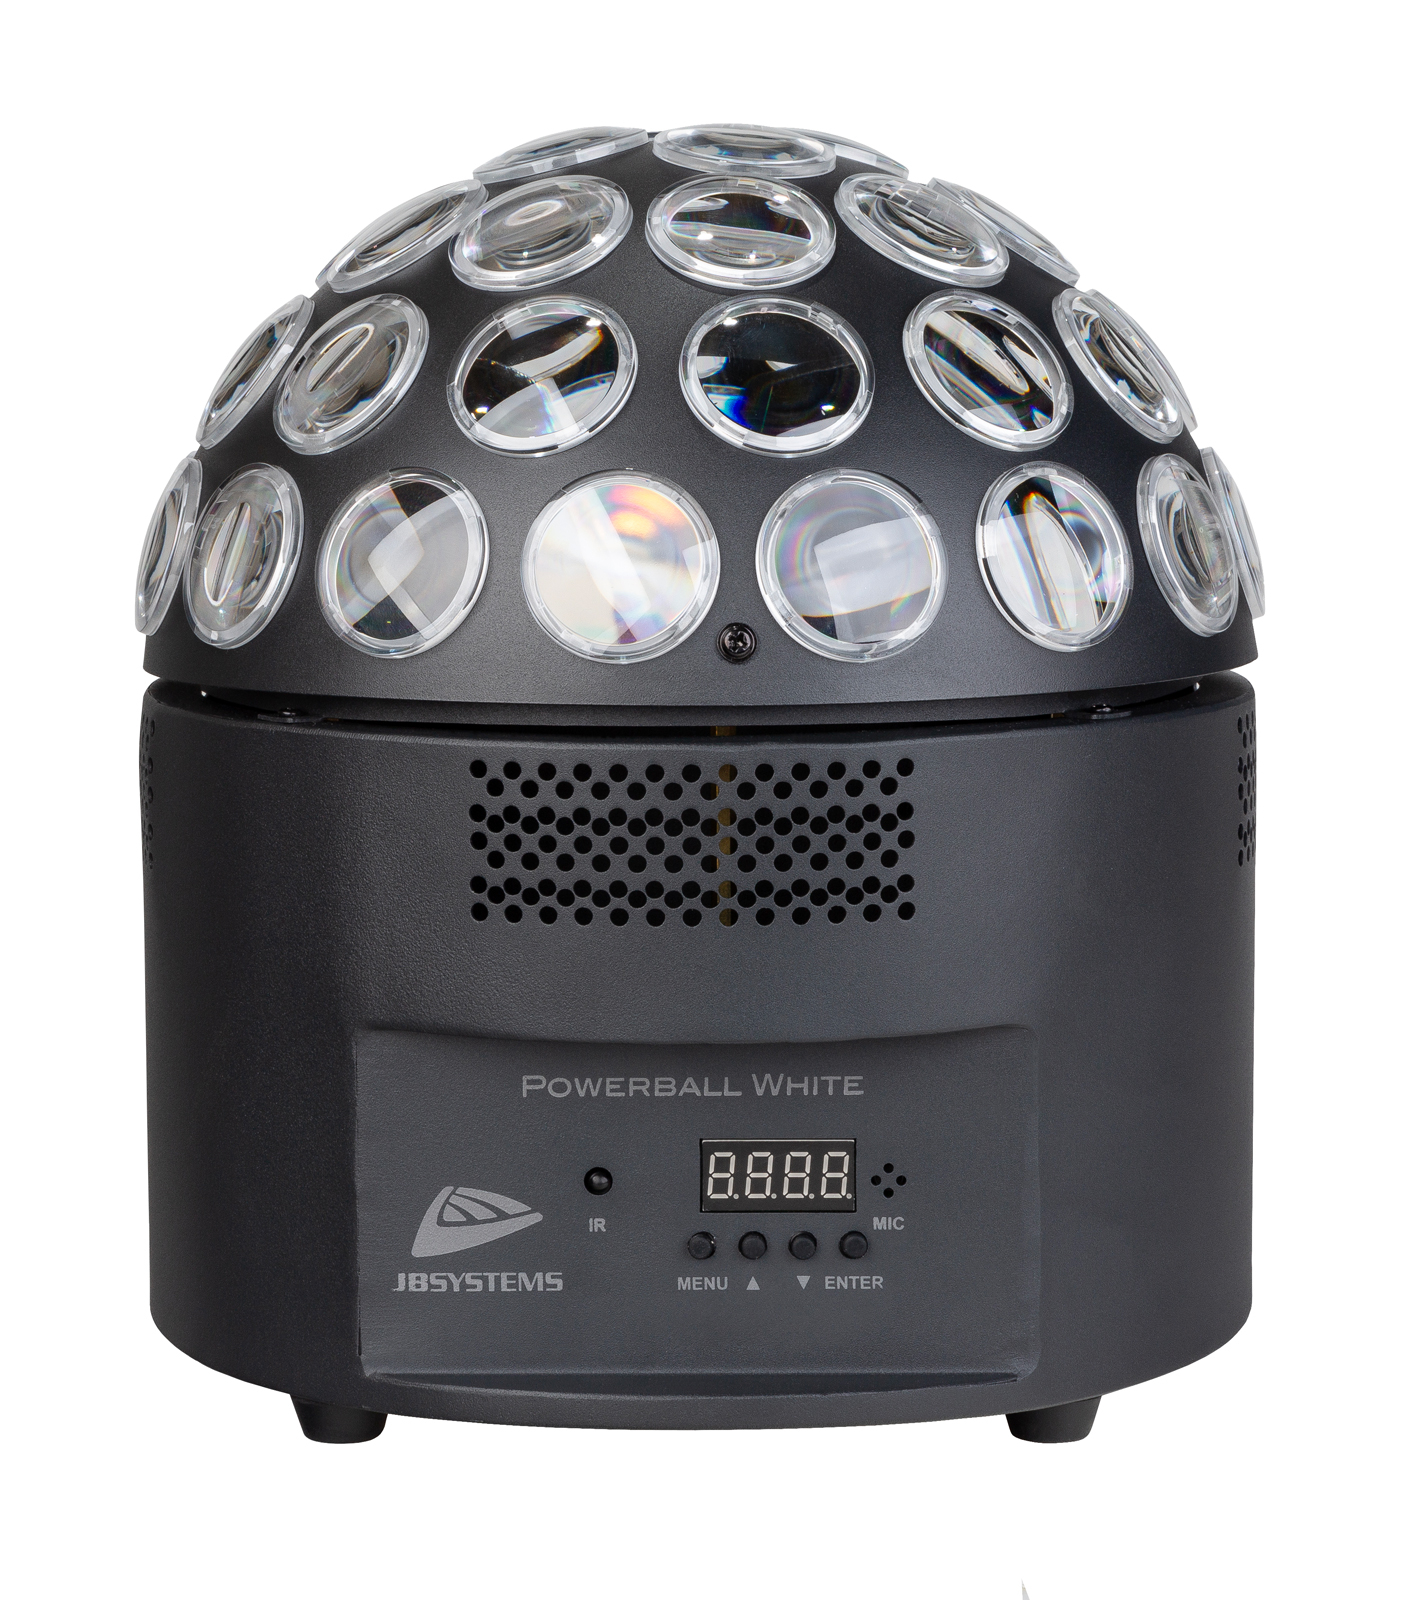 Puissante version à LEDs de 200W de la boule à facettes classique avec pinspots ! Des faisceaux tournants blancs chauds et froids contrôlés par DMX.